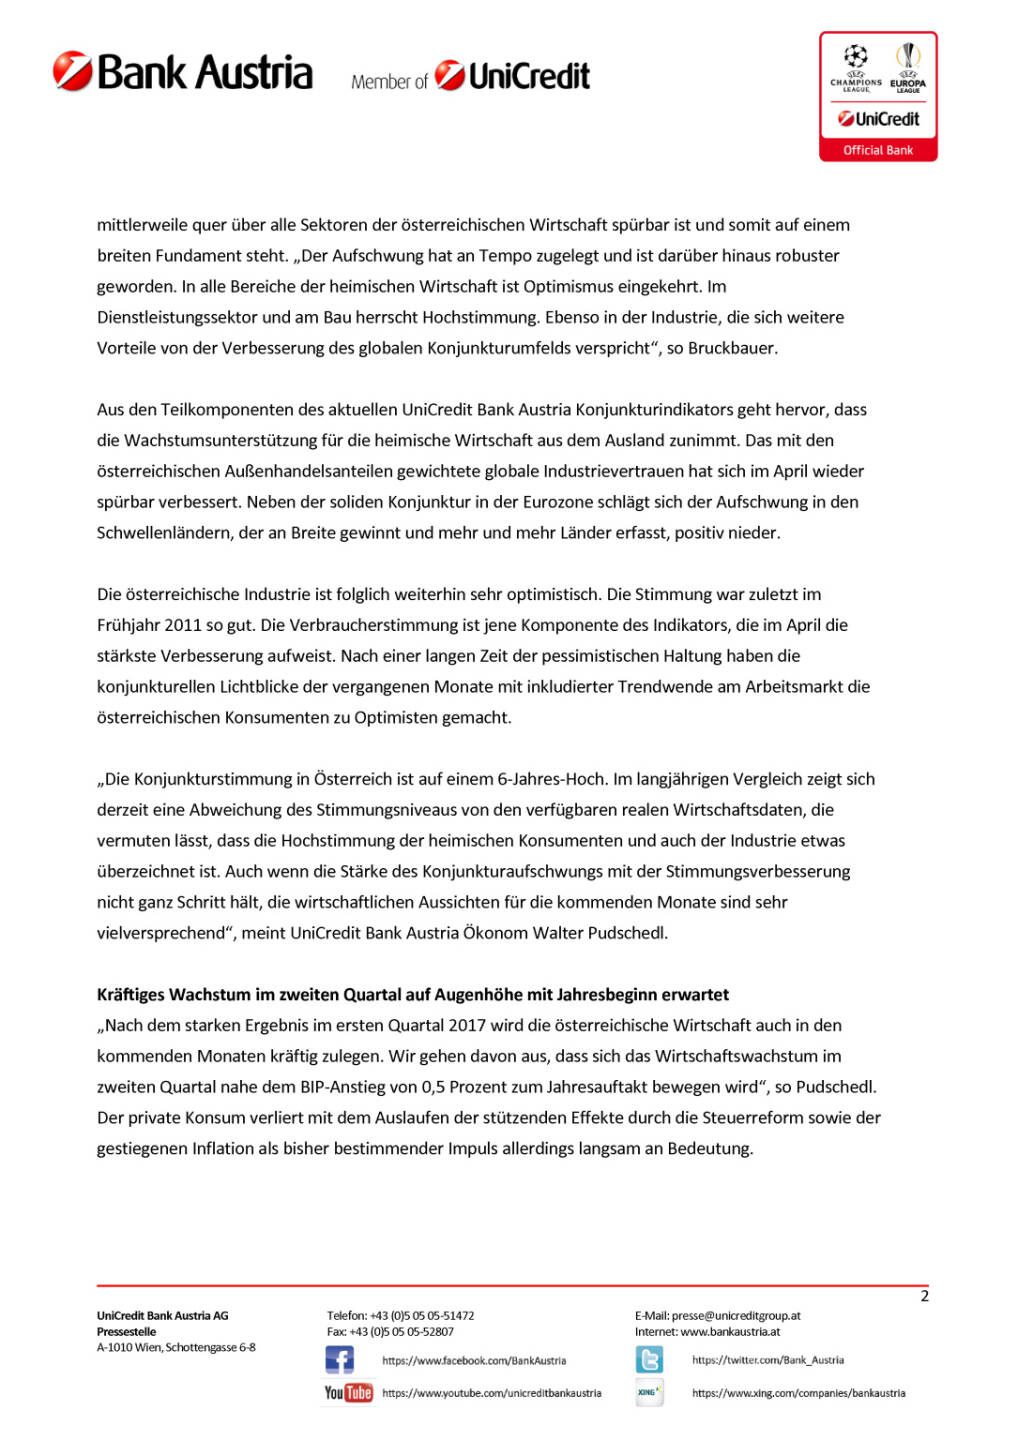 Mehr Rückenwind aus dem Ausland für Österreichs Wirtschaft Wien, 15. Mai 2017, Seite 2/5, komplettes Dokument unter http://boerse-social.com/static/uploads/file_2253_mehr_ruckenwind_aus_dem_ausland_fur_osterreichs_wirtschaft_wien_15_mai_2017.pdf